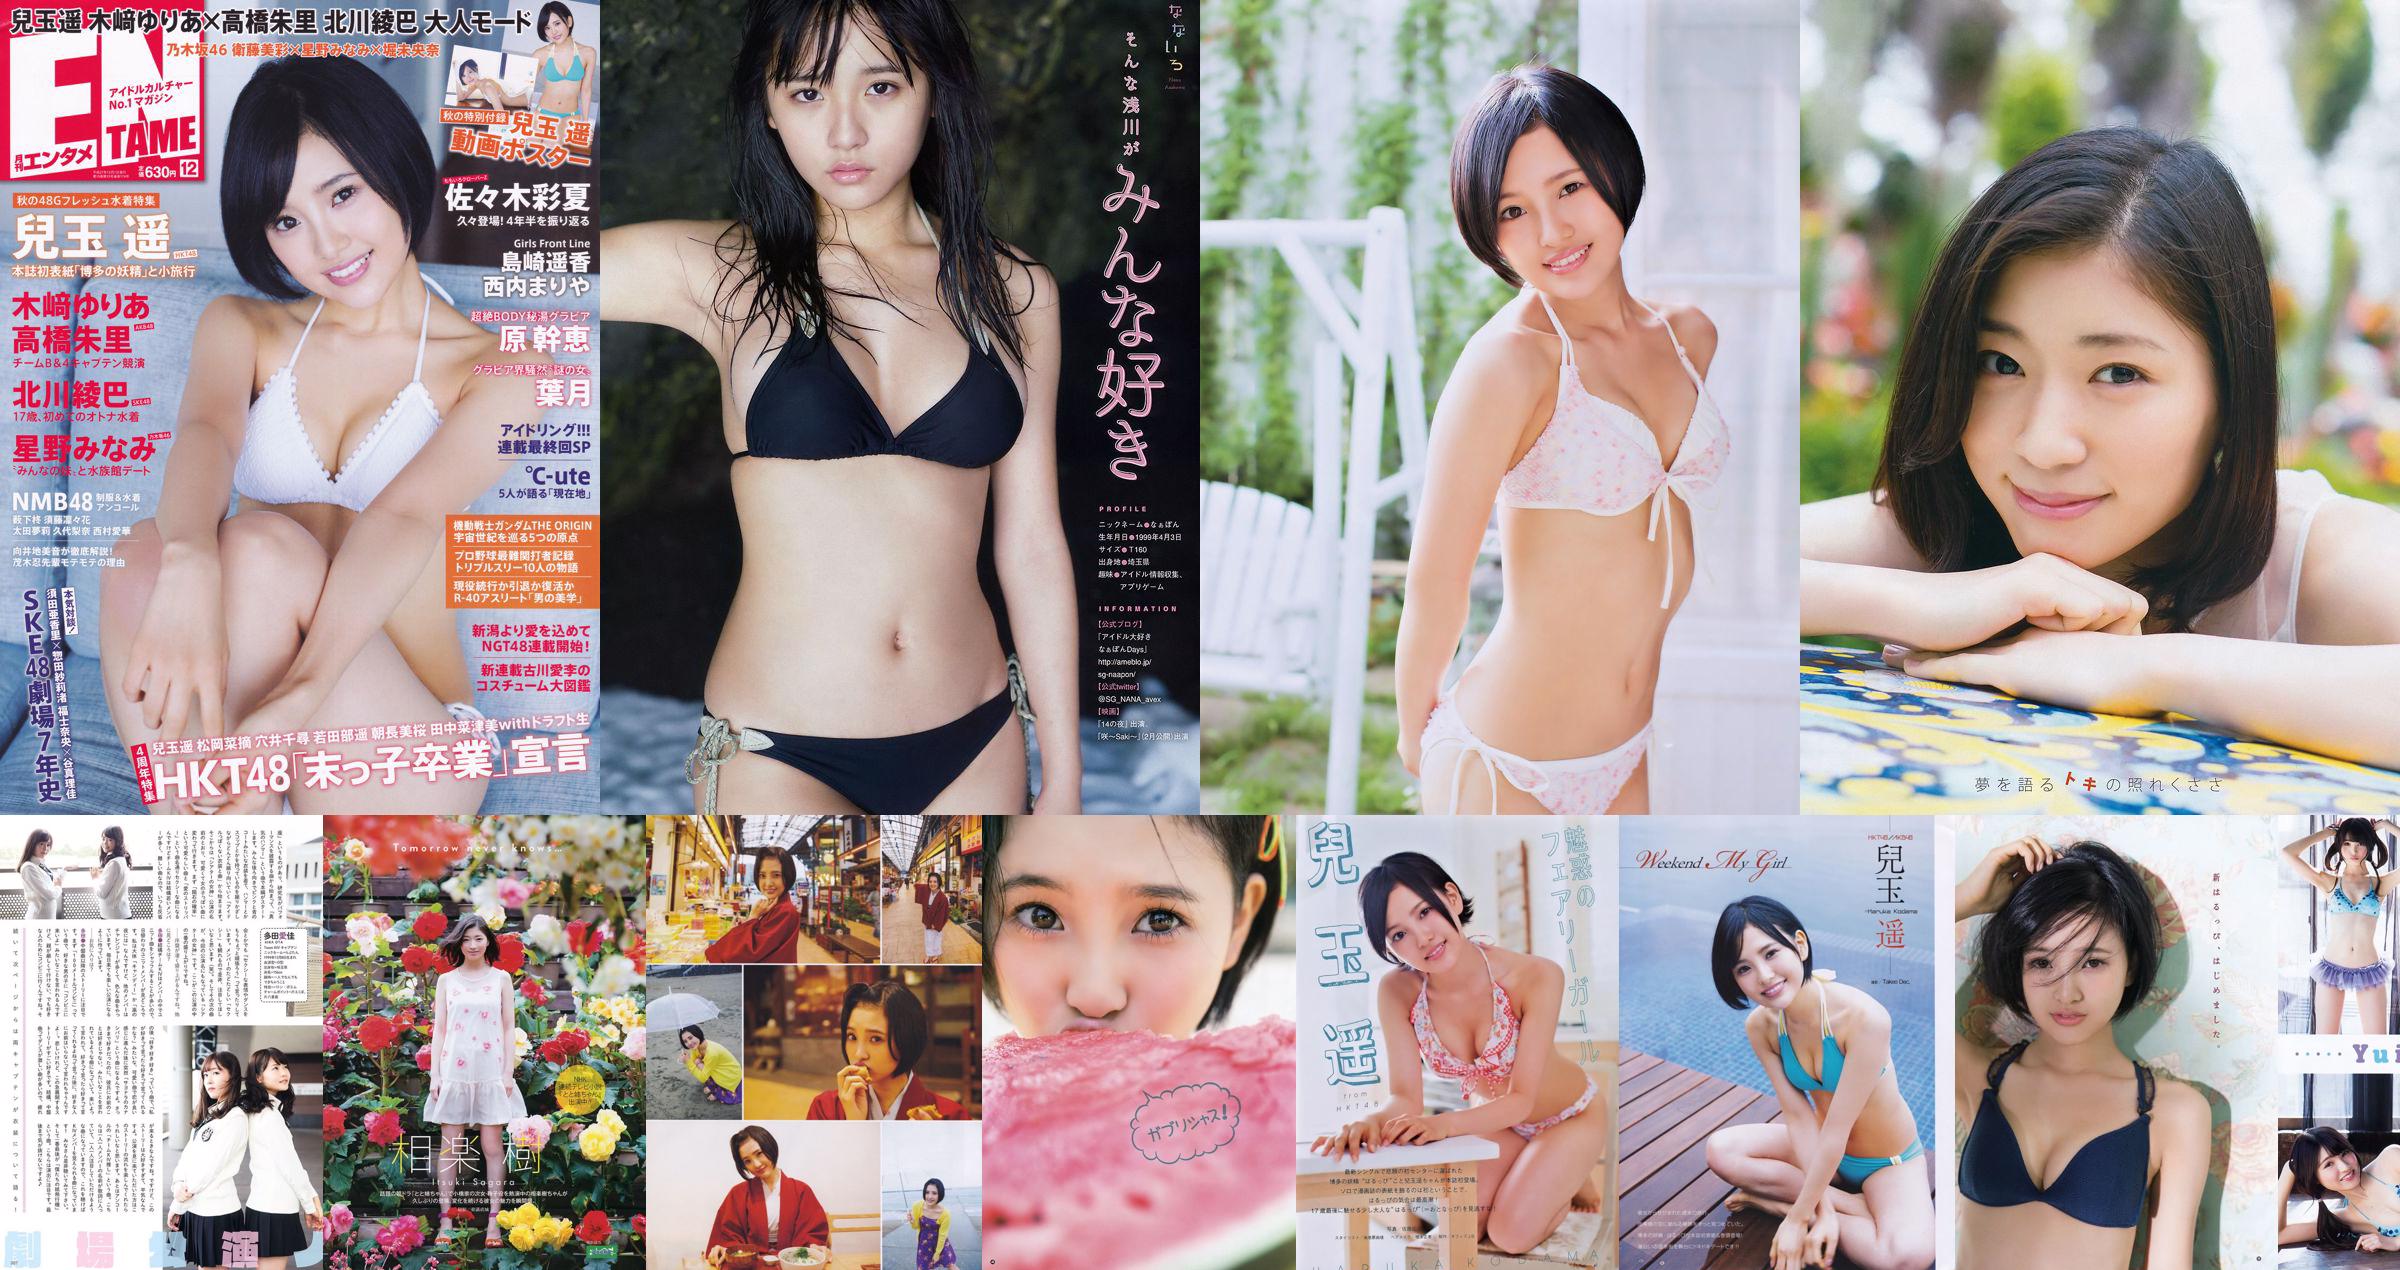 [Young Gangan] Haruka Kodama Rion 2015 No.23照片 No.46bd91 第3頁